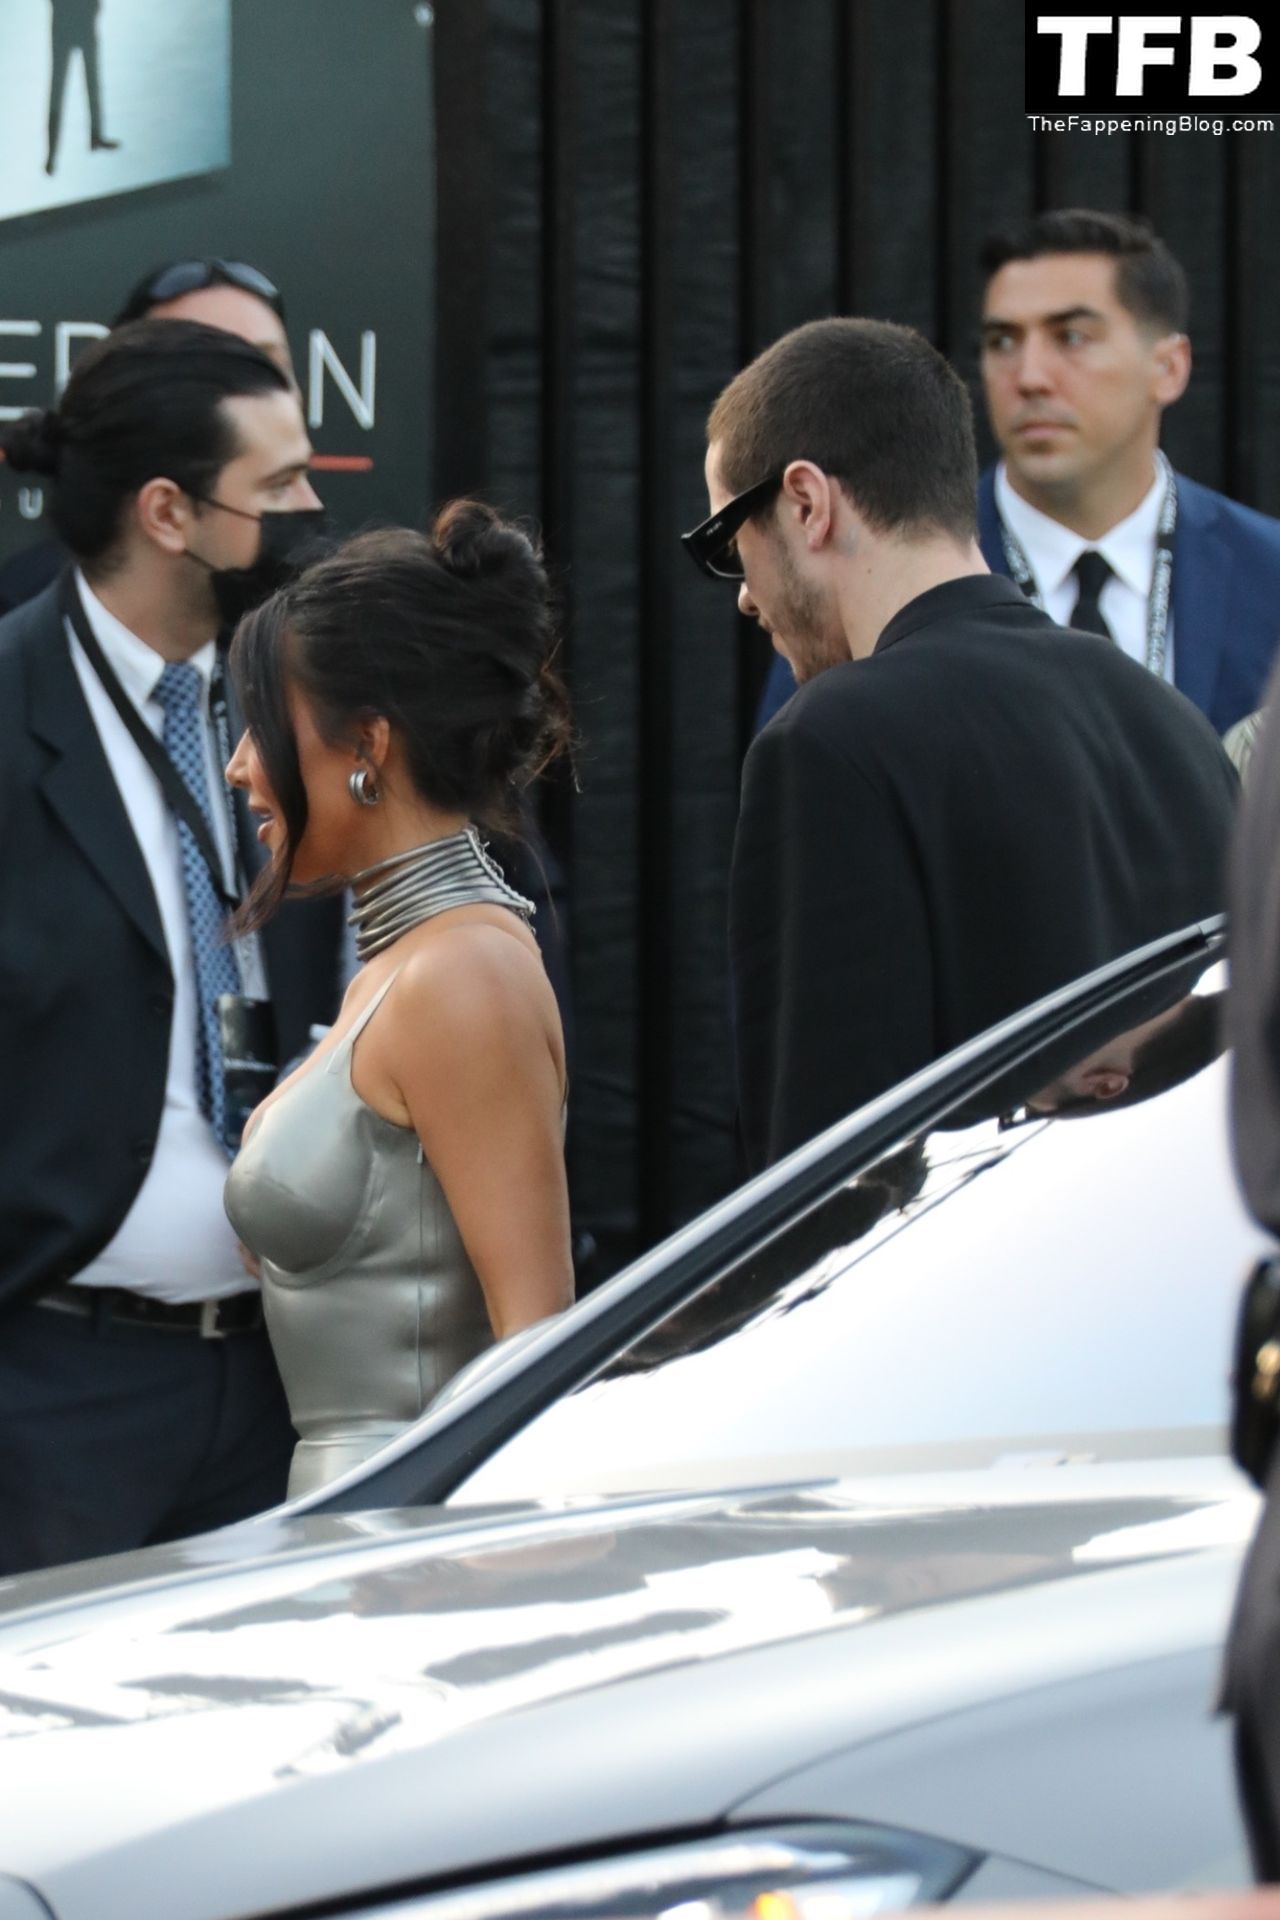 Kim-Kardashian-Sexy-The-Fappening-Blog-11.jpg